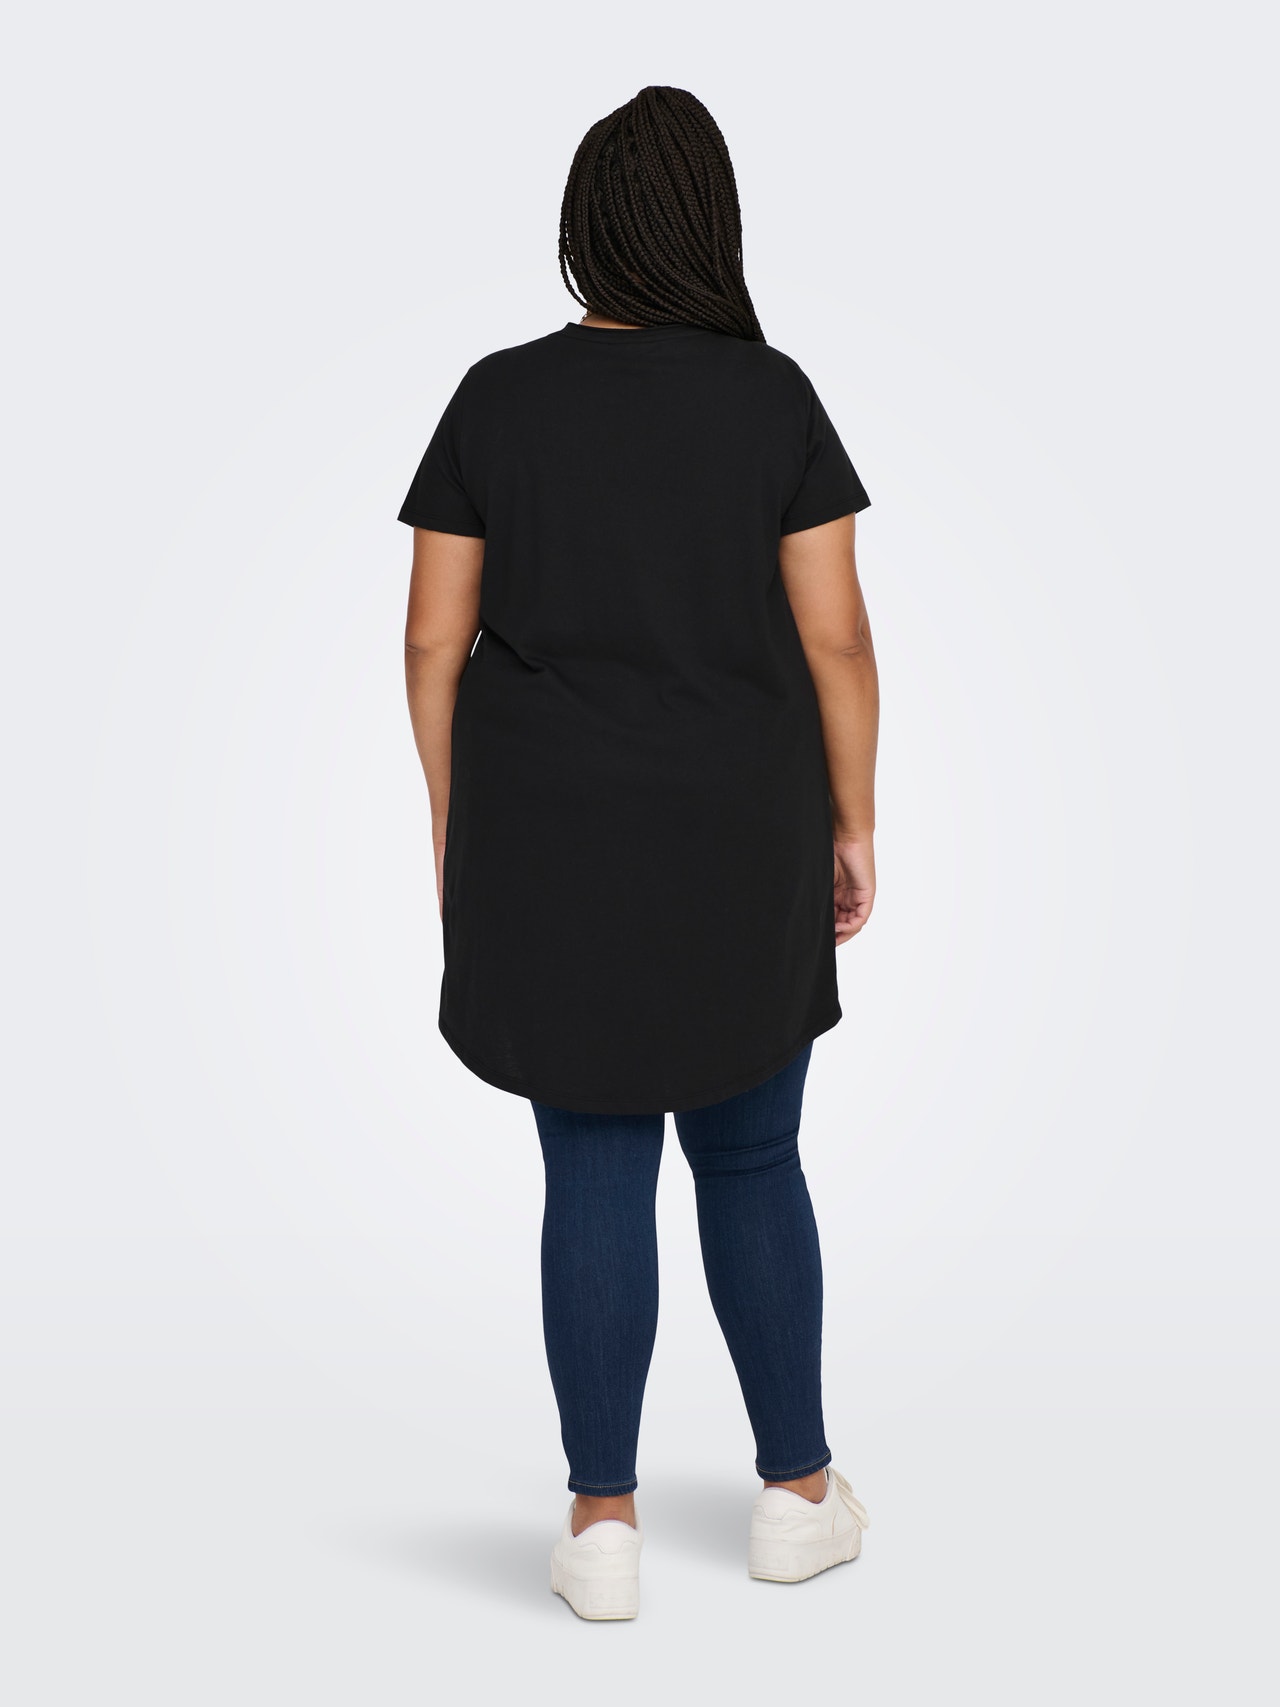 ONLY Curvy - Long T-Shirt -Black - 15289125